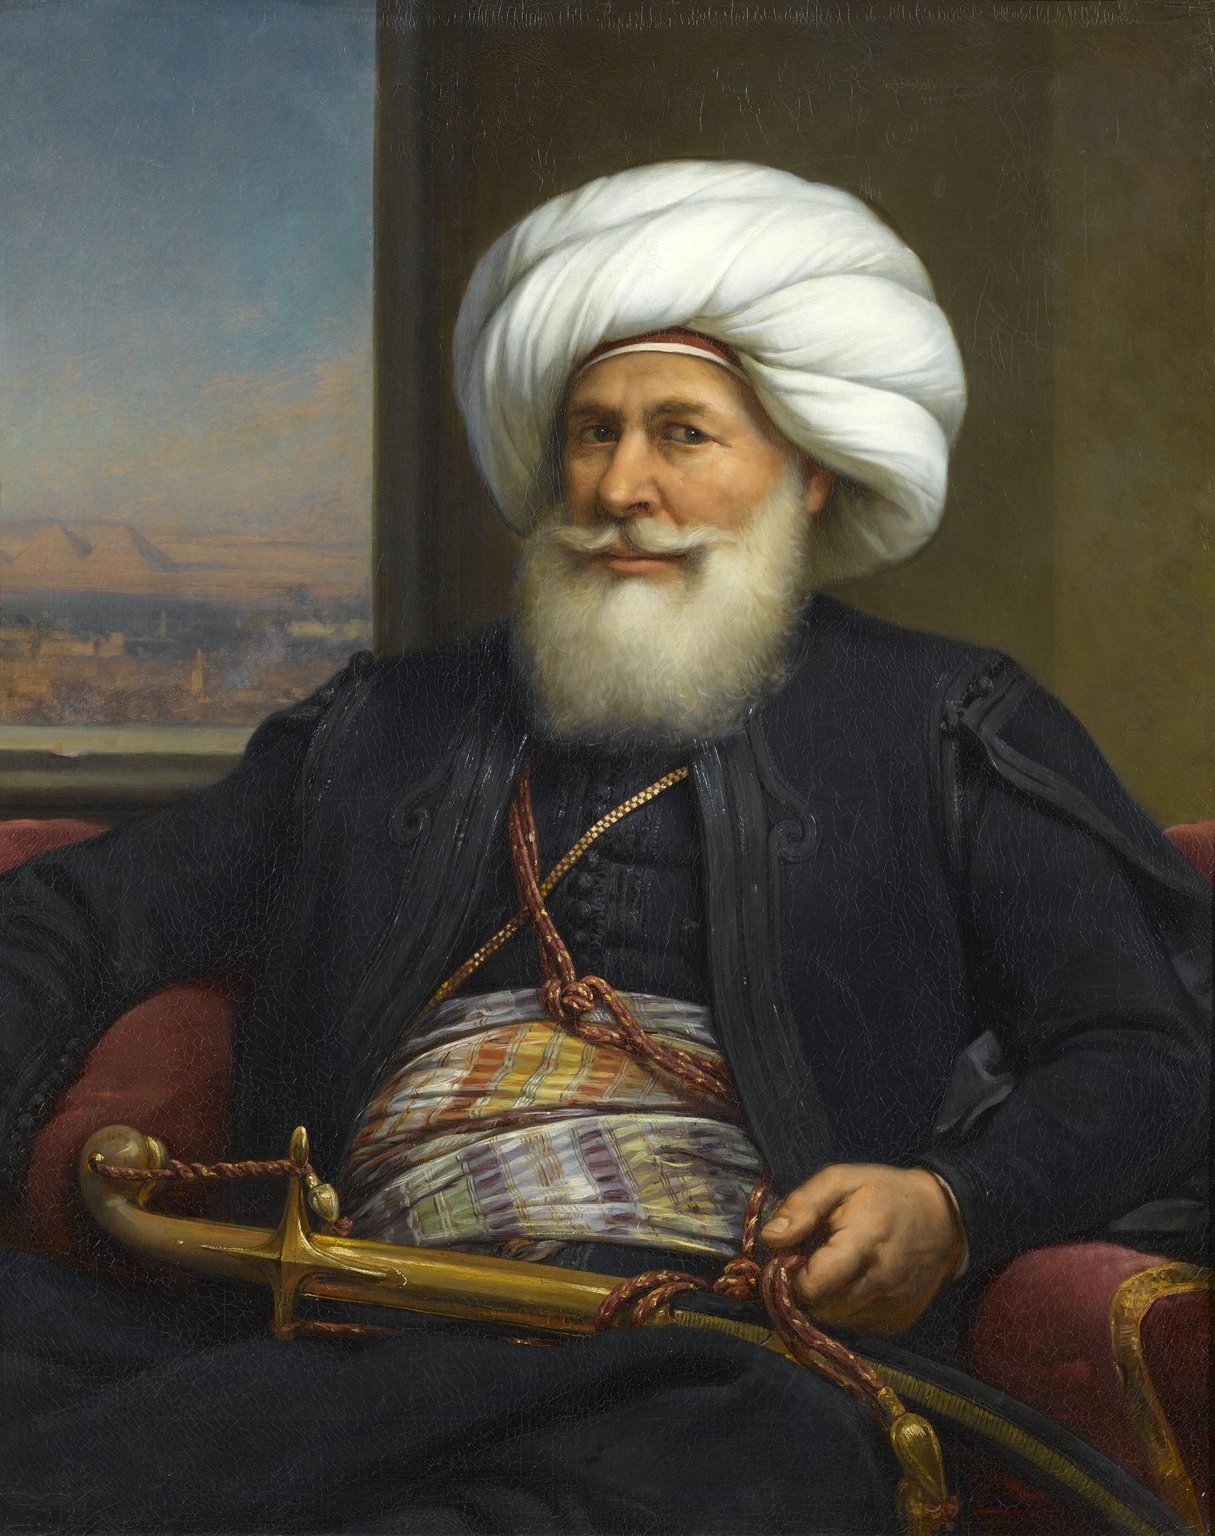 Vice-roi d’Égypte de 1804 à 1849, Mehmet Ali était déjà à son époque favorable au percement d’un canal. &copy; Bibliotheca Alexandrina&rsquo;s Memory of Modern Egypt / Domaine public